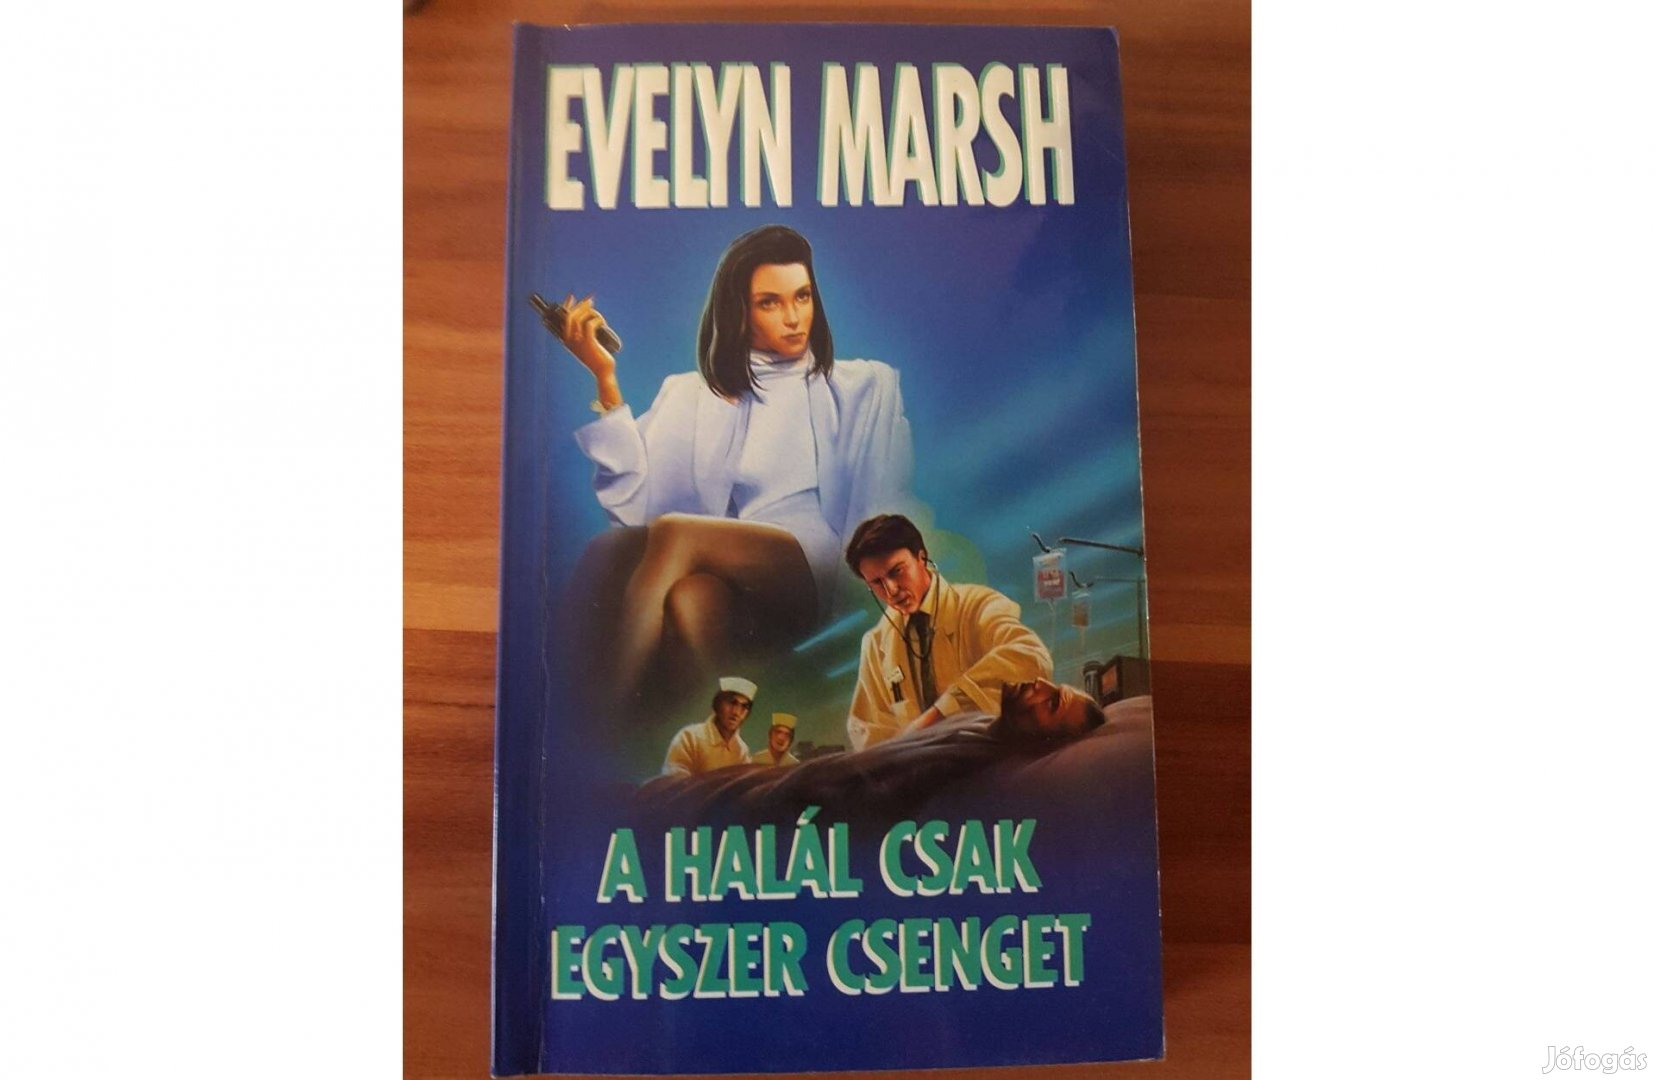 Evelyn Marsh - A halál csak egyszer csenget